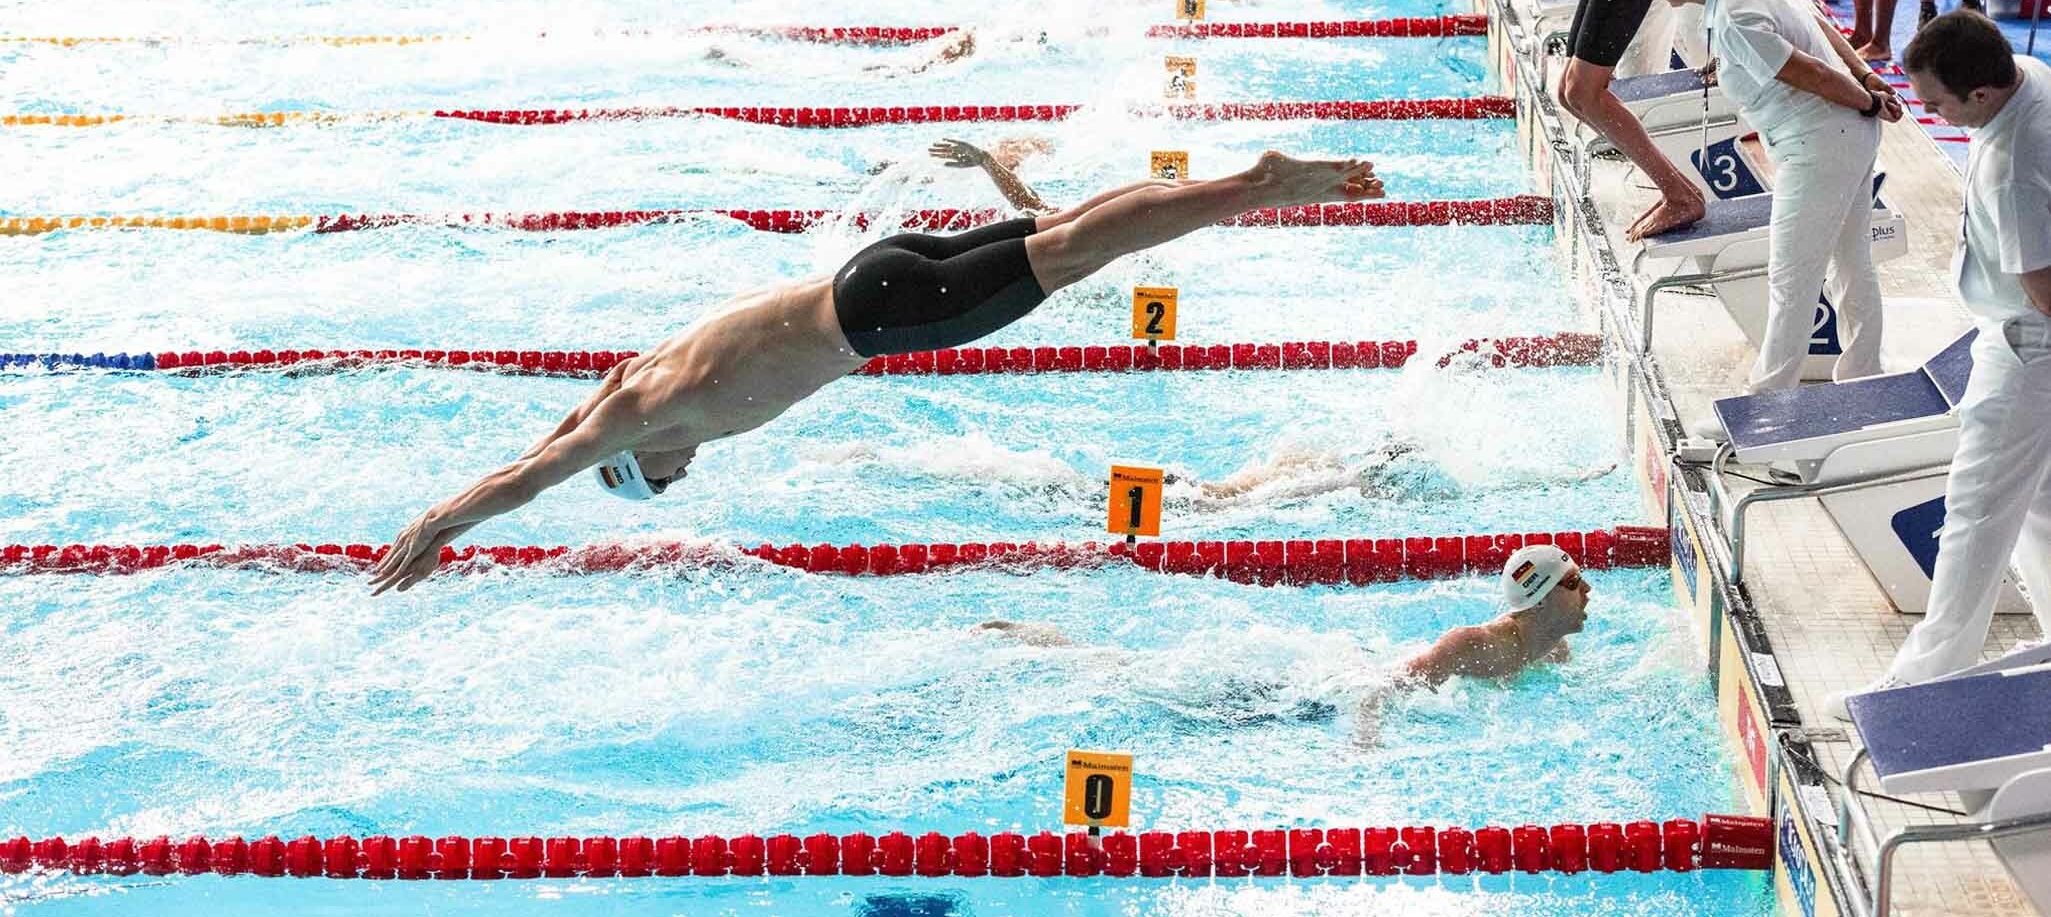 SchwimmerInnen lieferten sportliche WM-Vorschüsse quasi als Befehl für Bürokratie